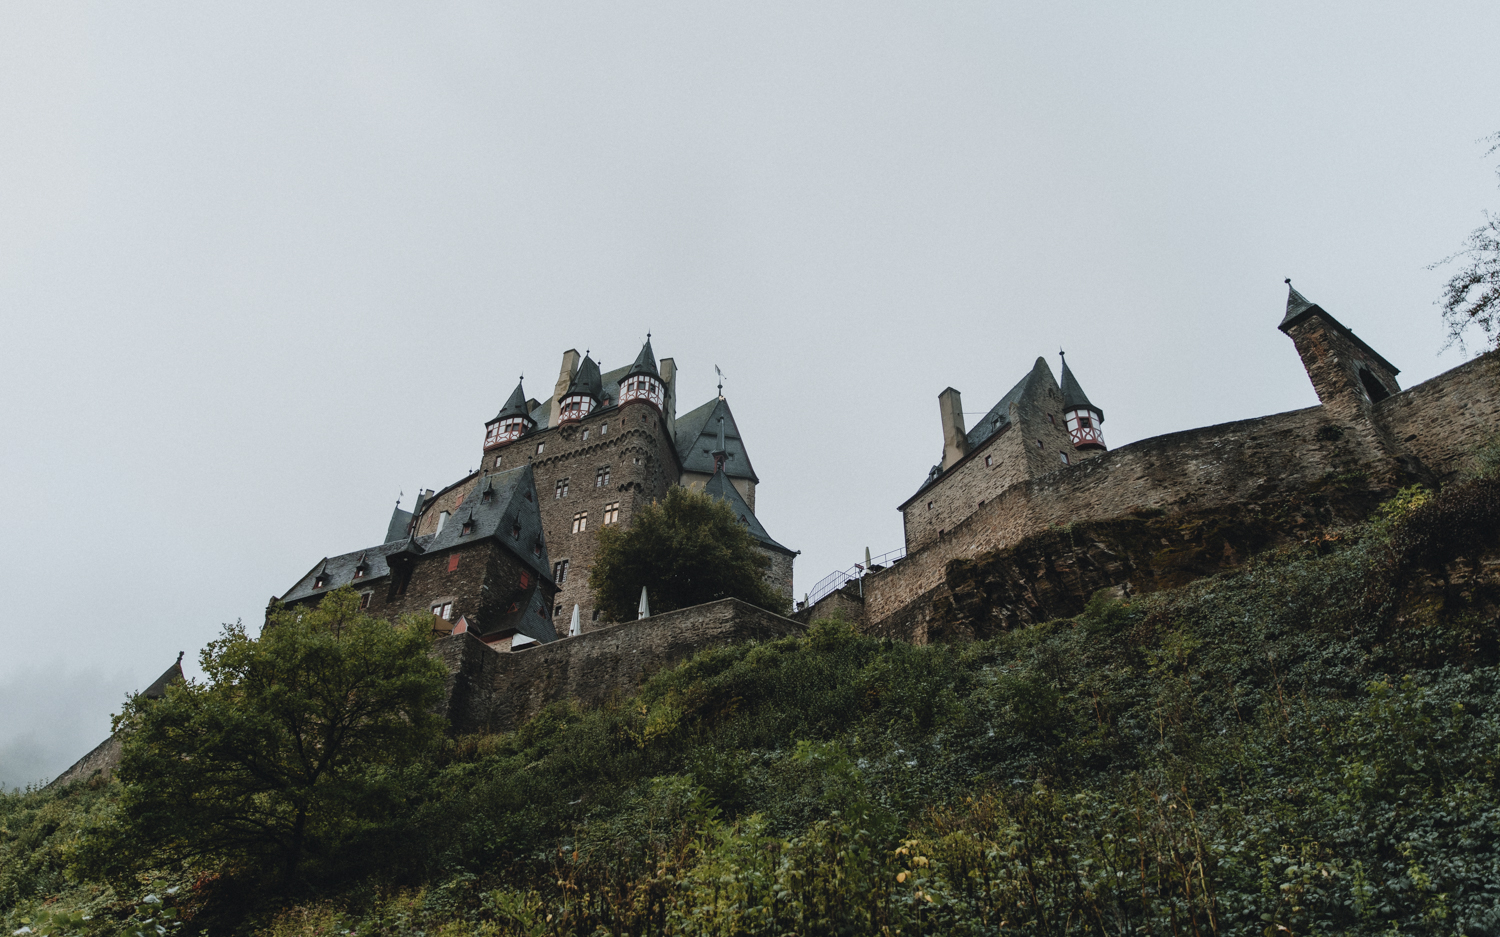 A side shot of Burg Eltz castle in Germany